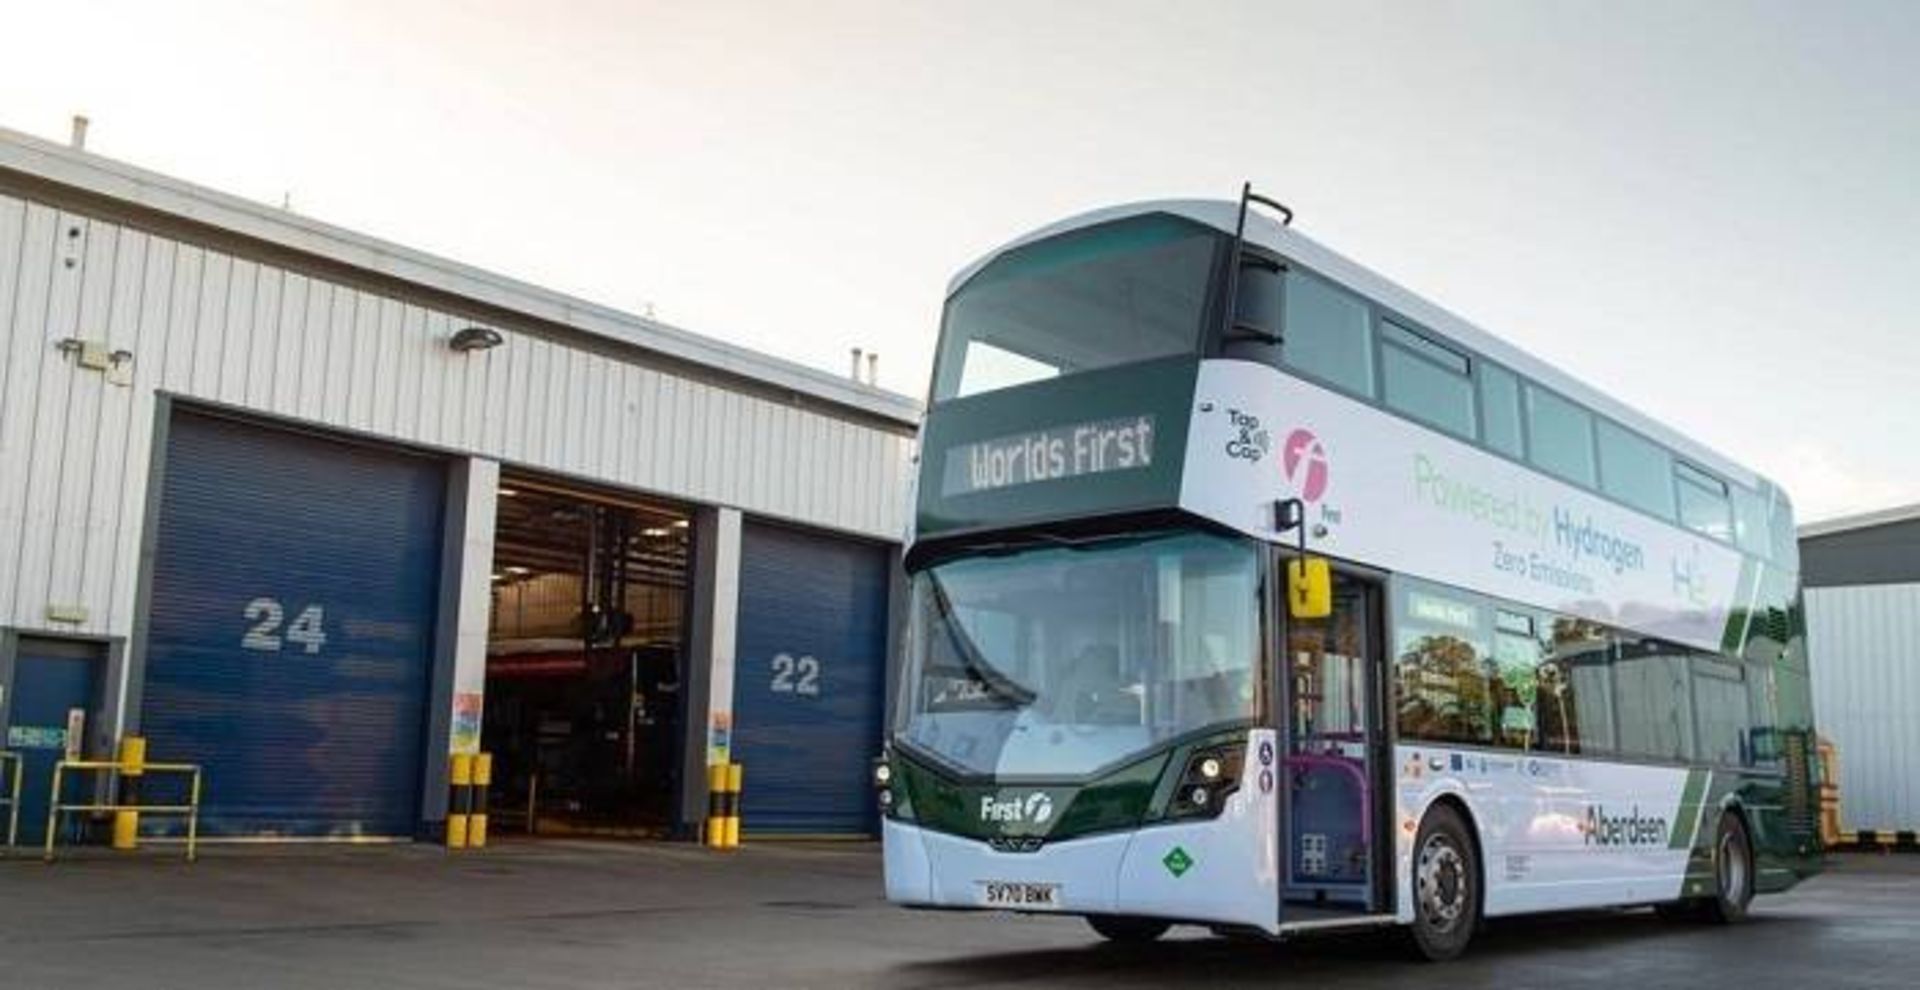 اتوبوس هیدروژنی / hydrogen-powered bus 